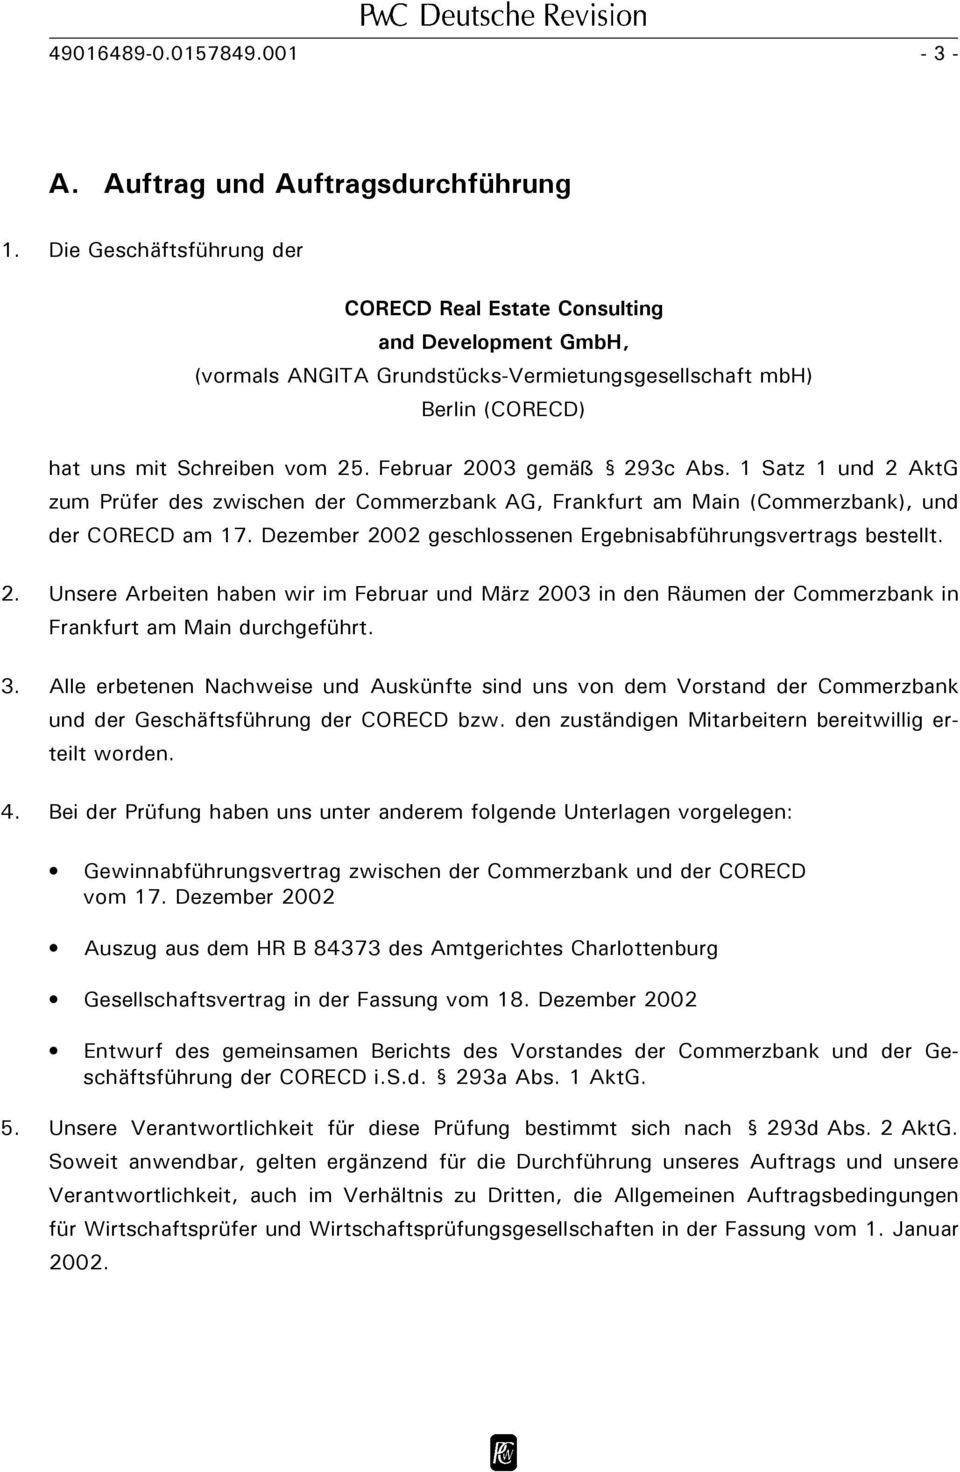 Februar 2003 gemäß 293c Abs. 1 Satz 1 und 2 AktG zum Prüfer des zwischen der Commerzbank AG, Frankfurt am Main (Commerzbank), und der CORECD am 17.